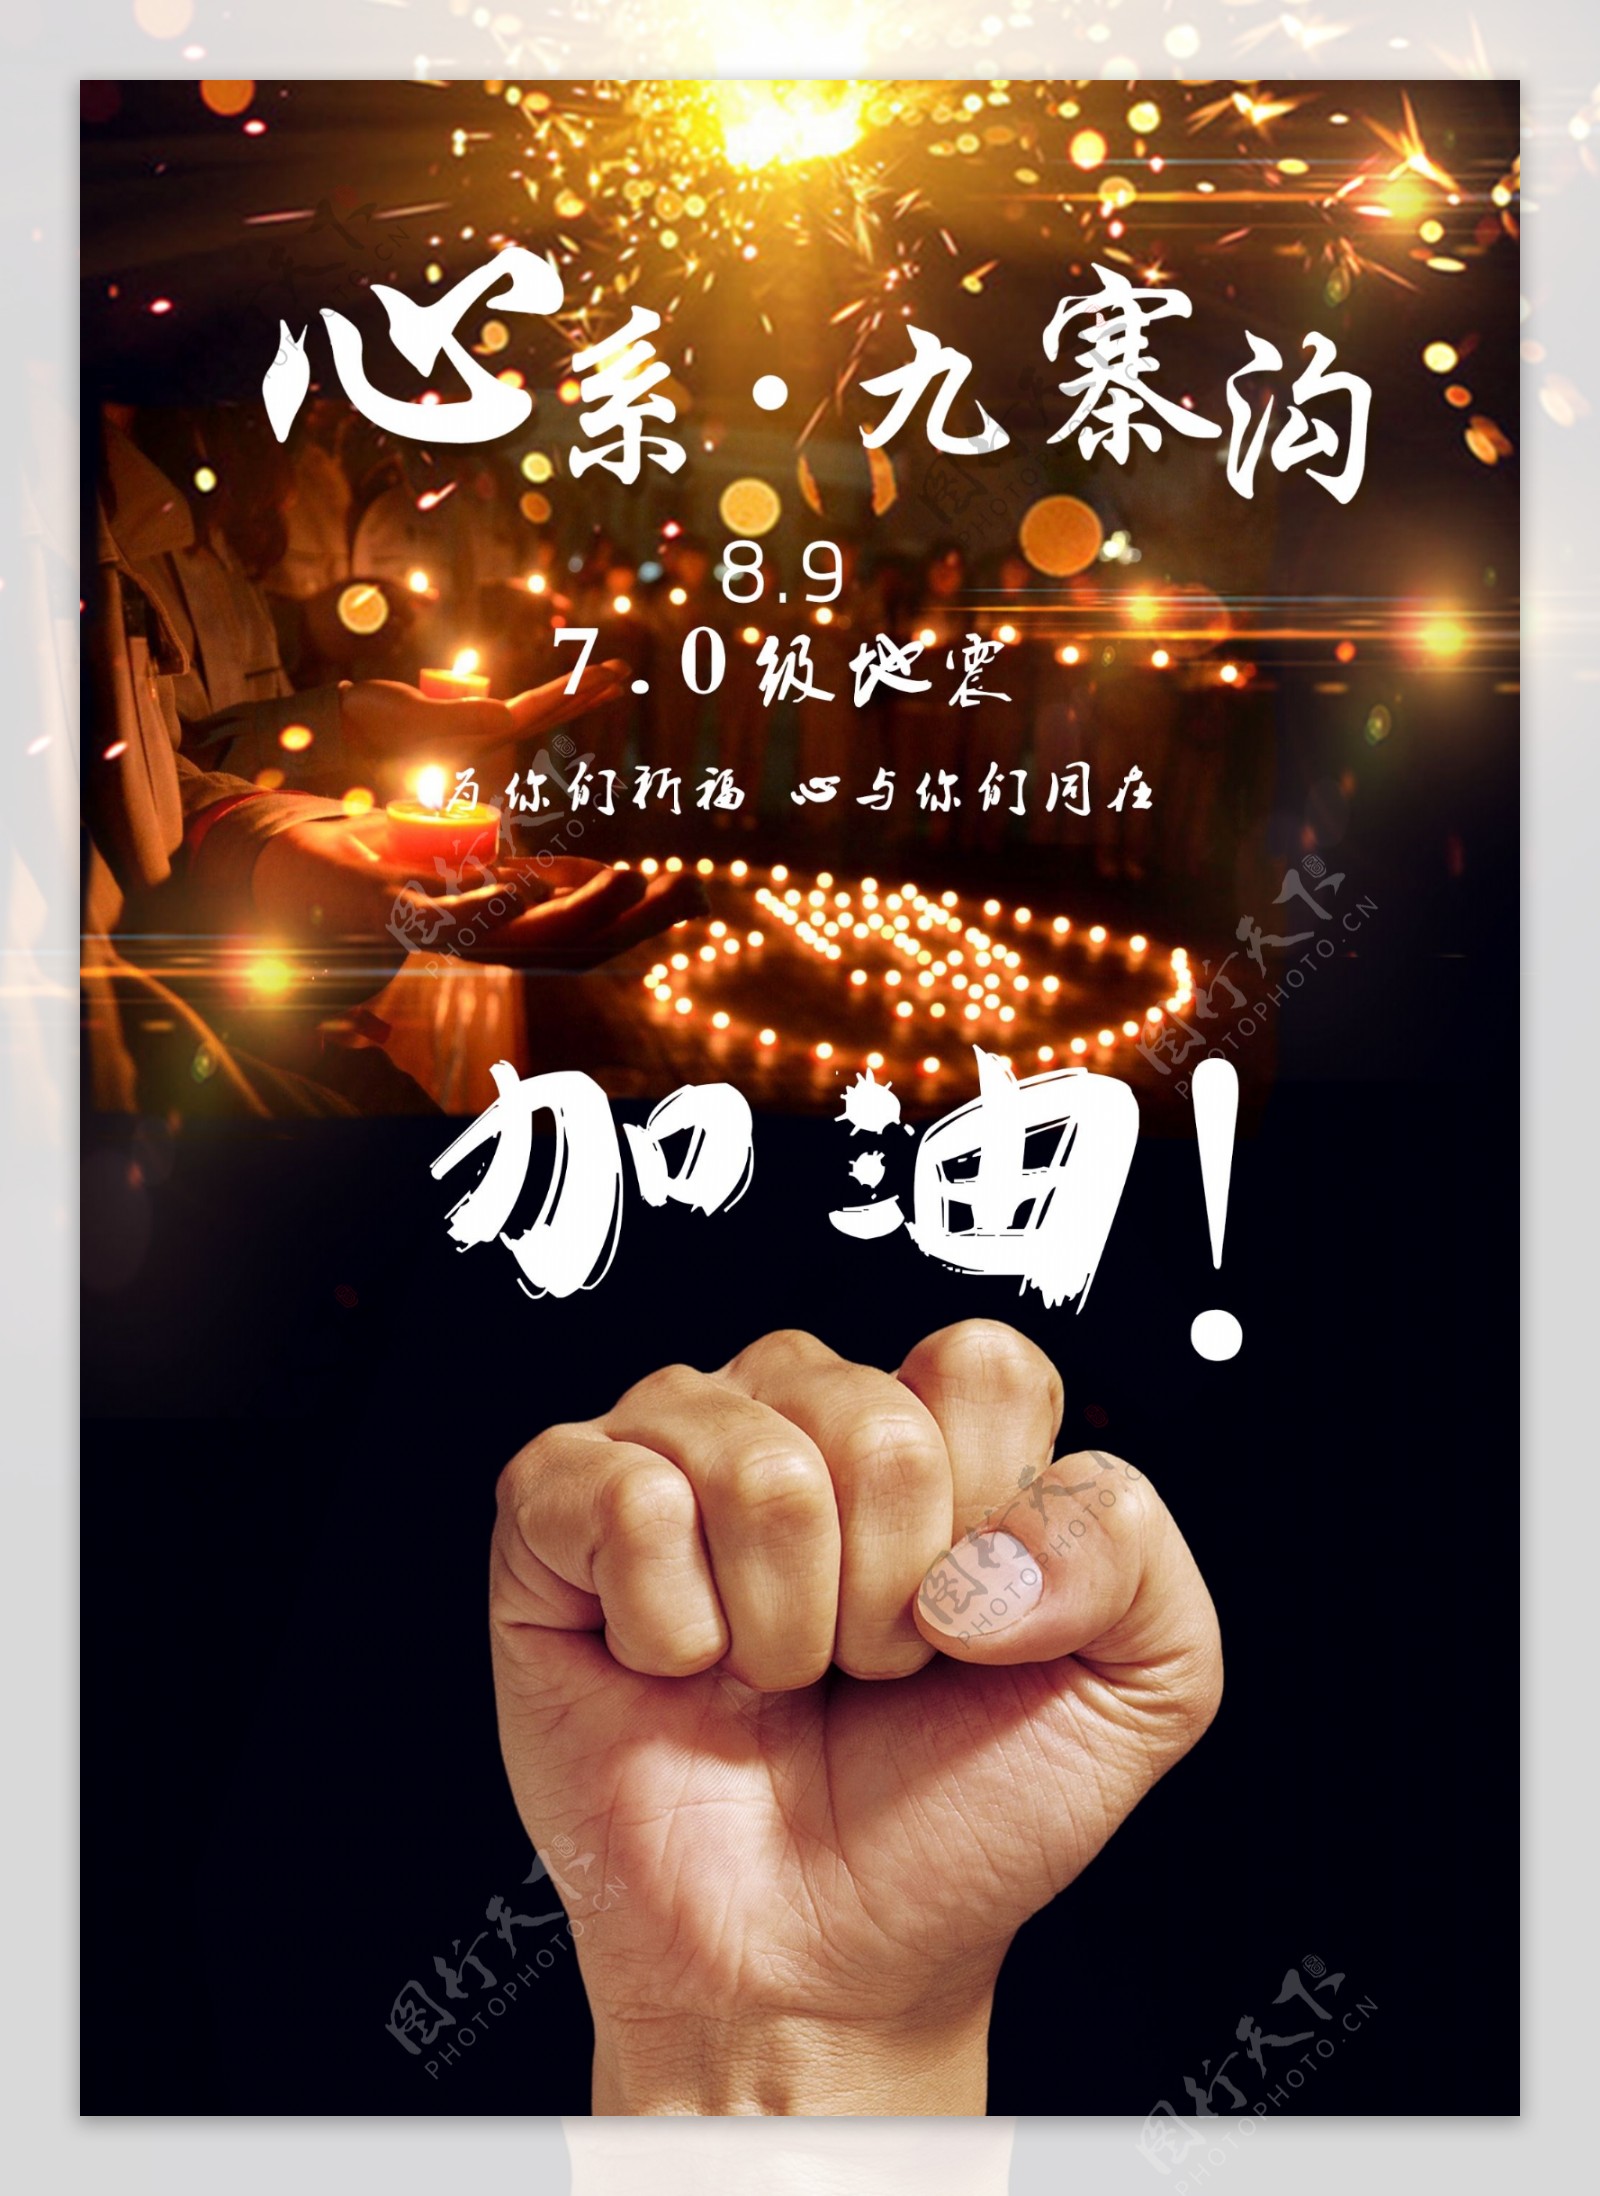 九寨沟地震公益海报